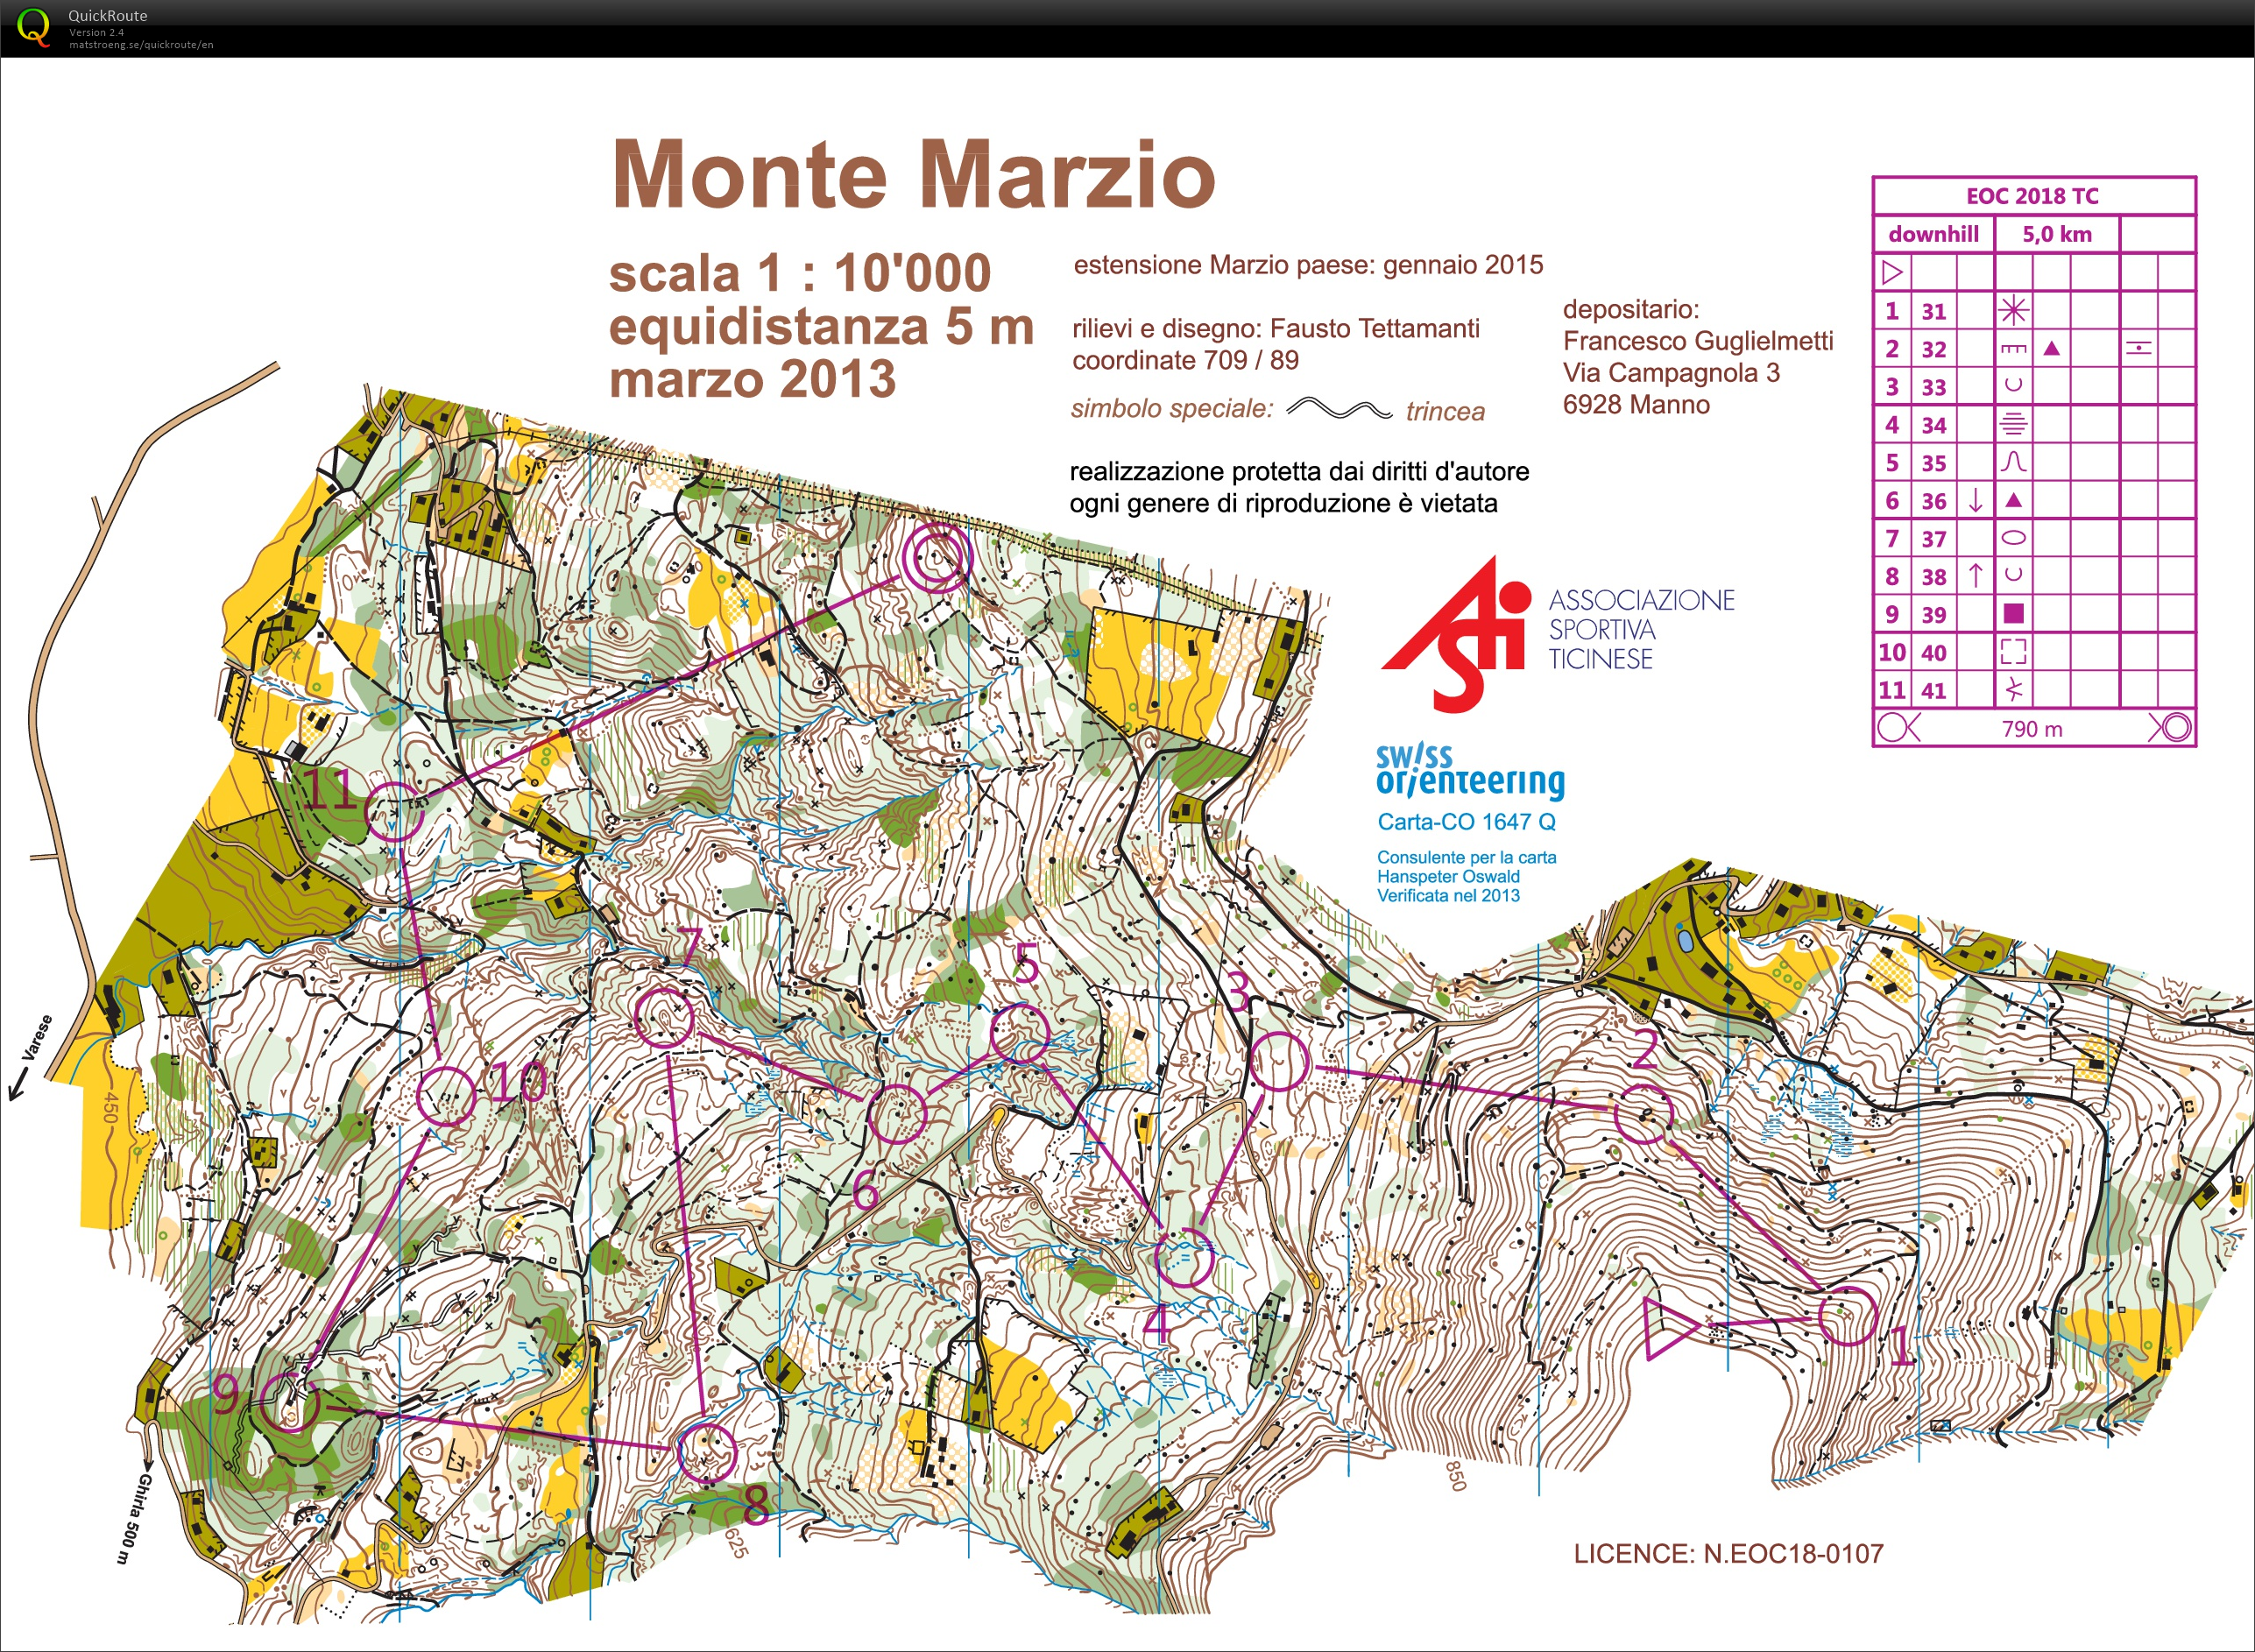 Monte Marzio Downhill EOC TL #2 (24-03-2018)